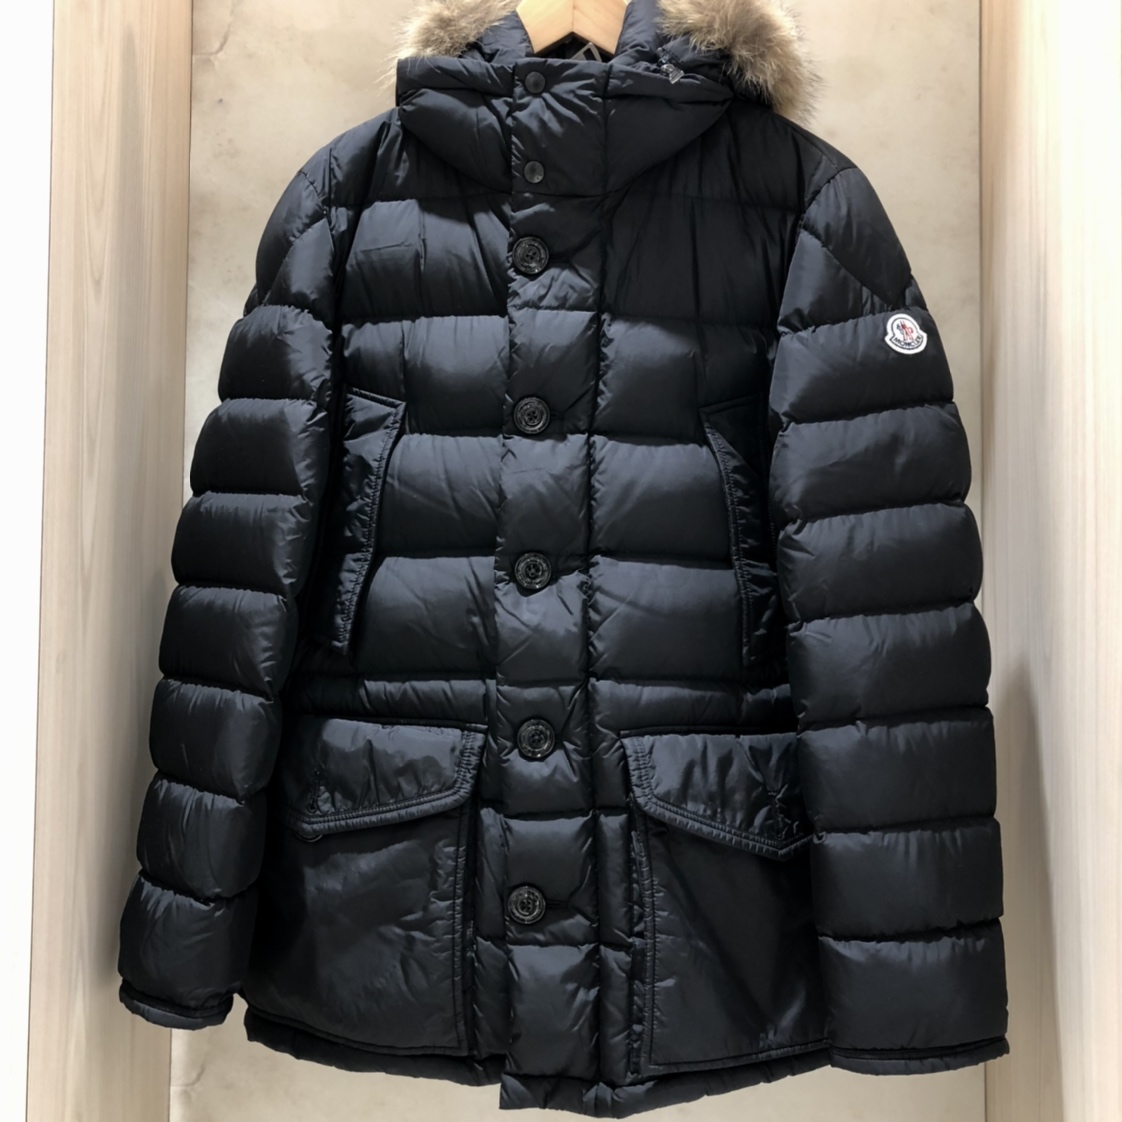 エコスタイル渋谷店で、2016年製のモンクレールのダウンコート(CLUNY)を買取ました。 買取価格・実績 2020年11月30日公開情報